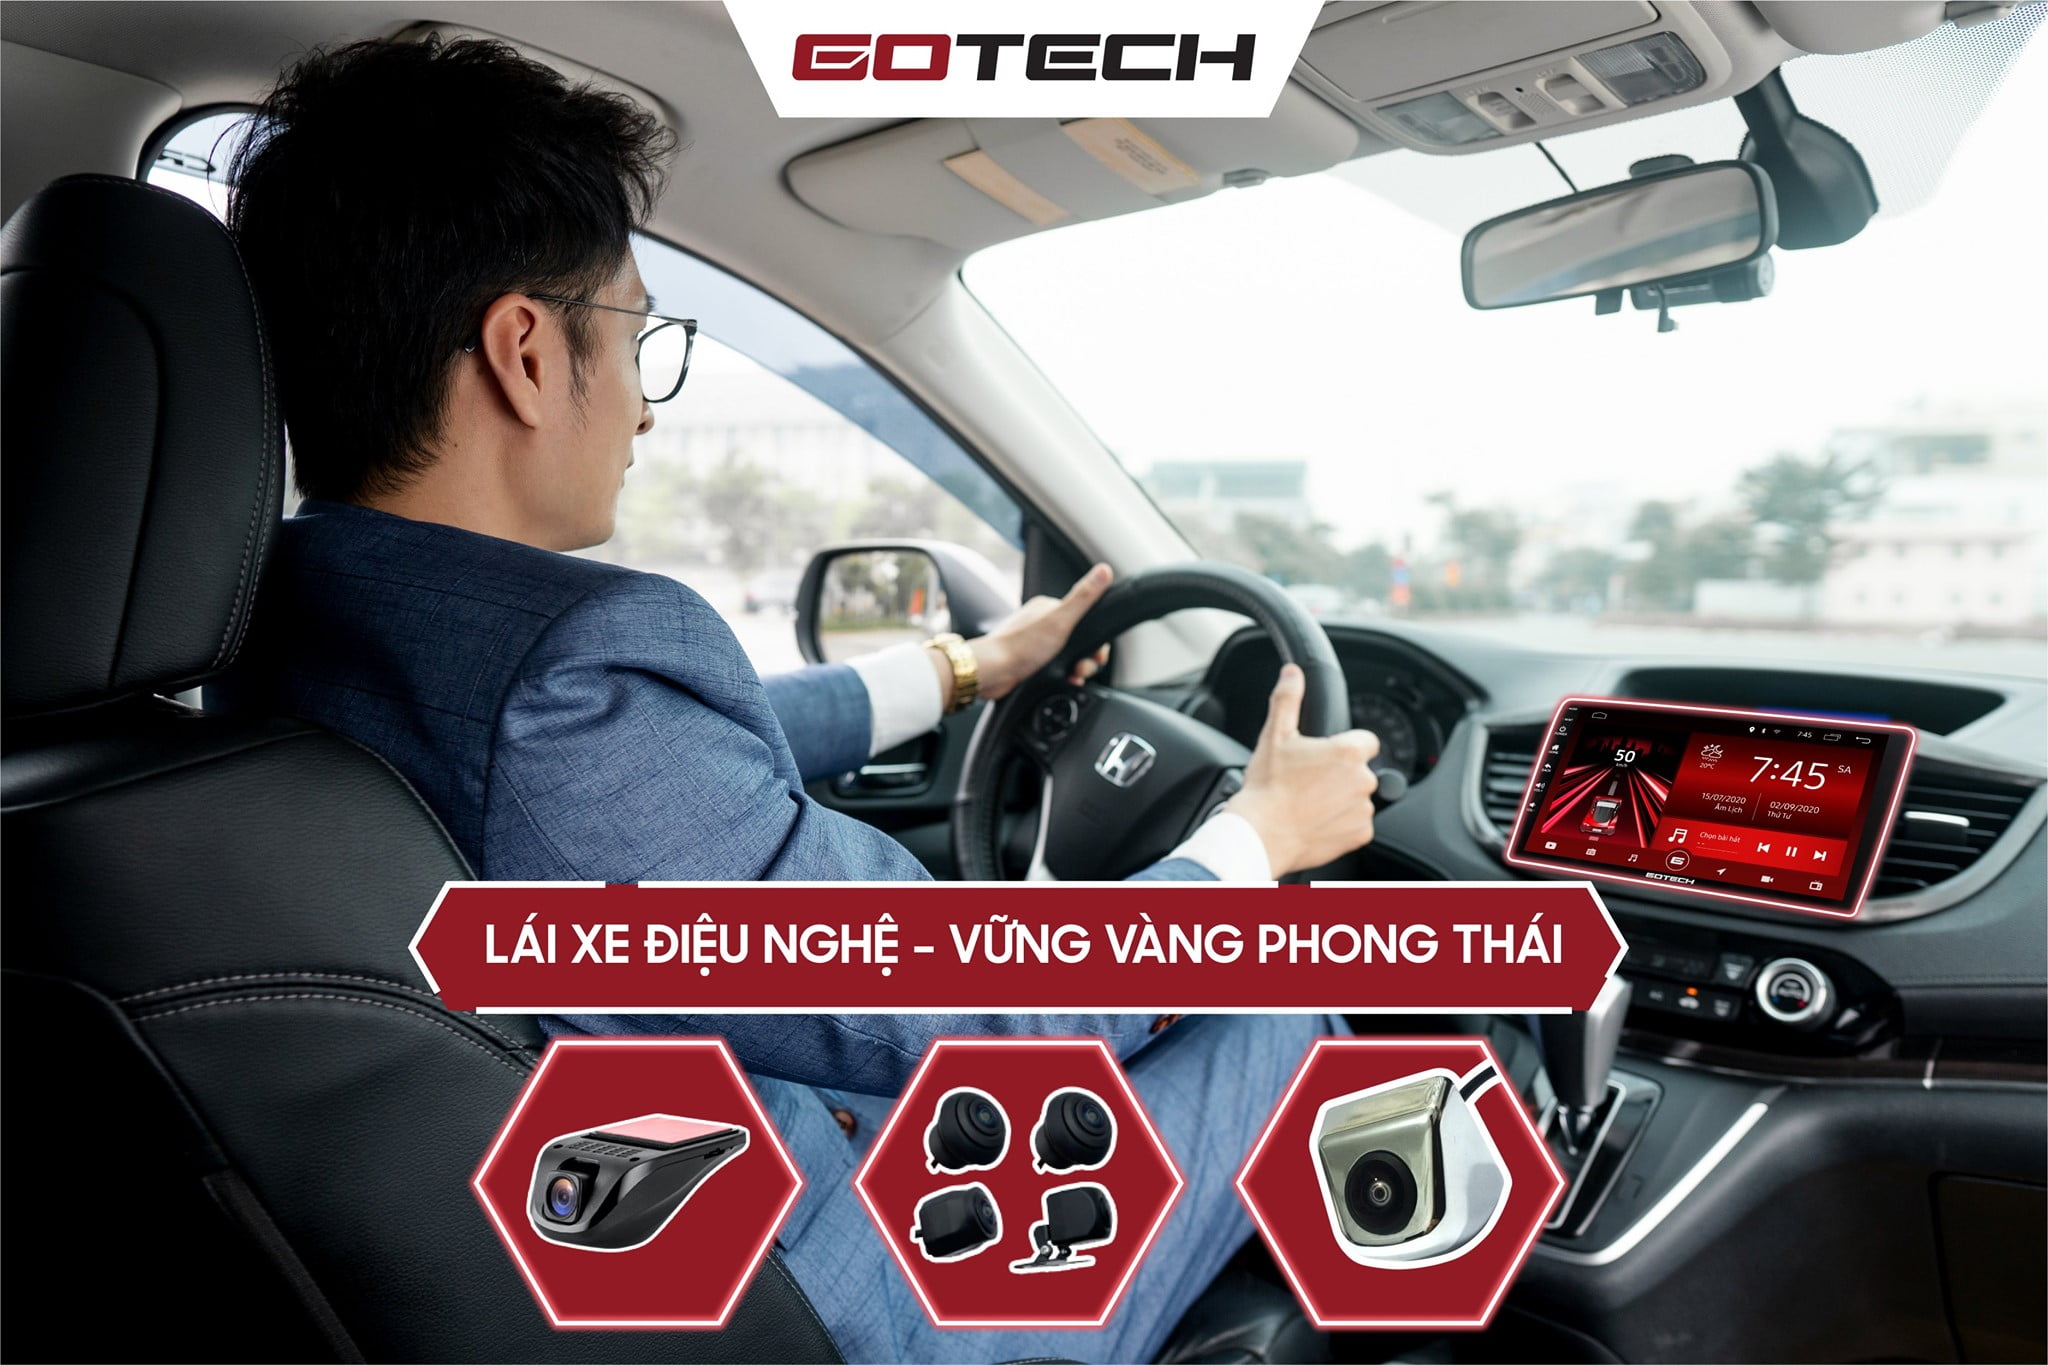 Màn Hình DVD Android Gotech Mazda 360 Limited - Trải nghiệm lái xe an toàn